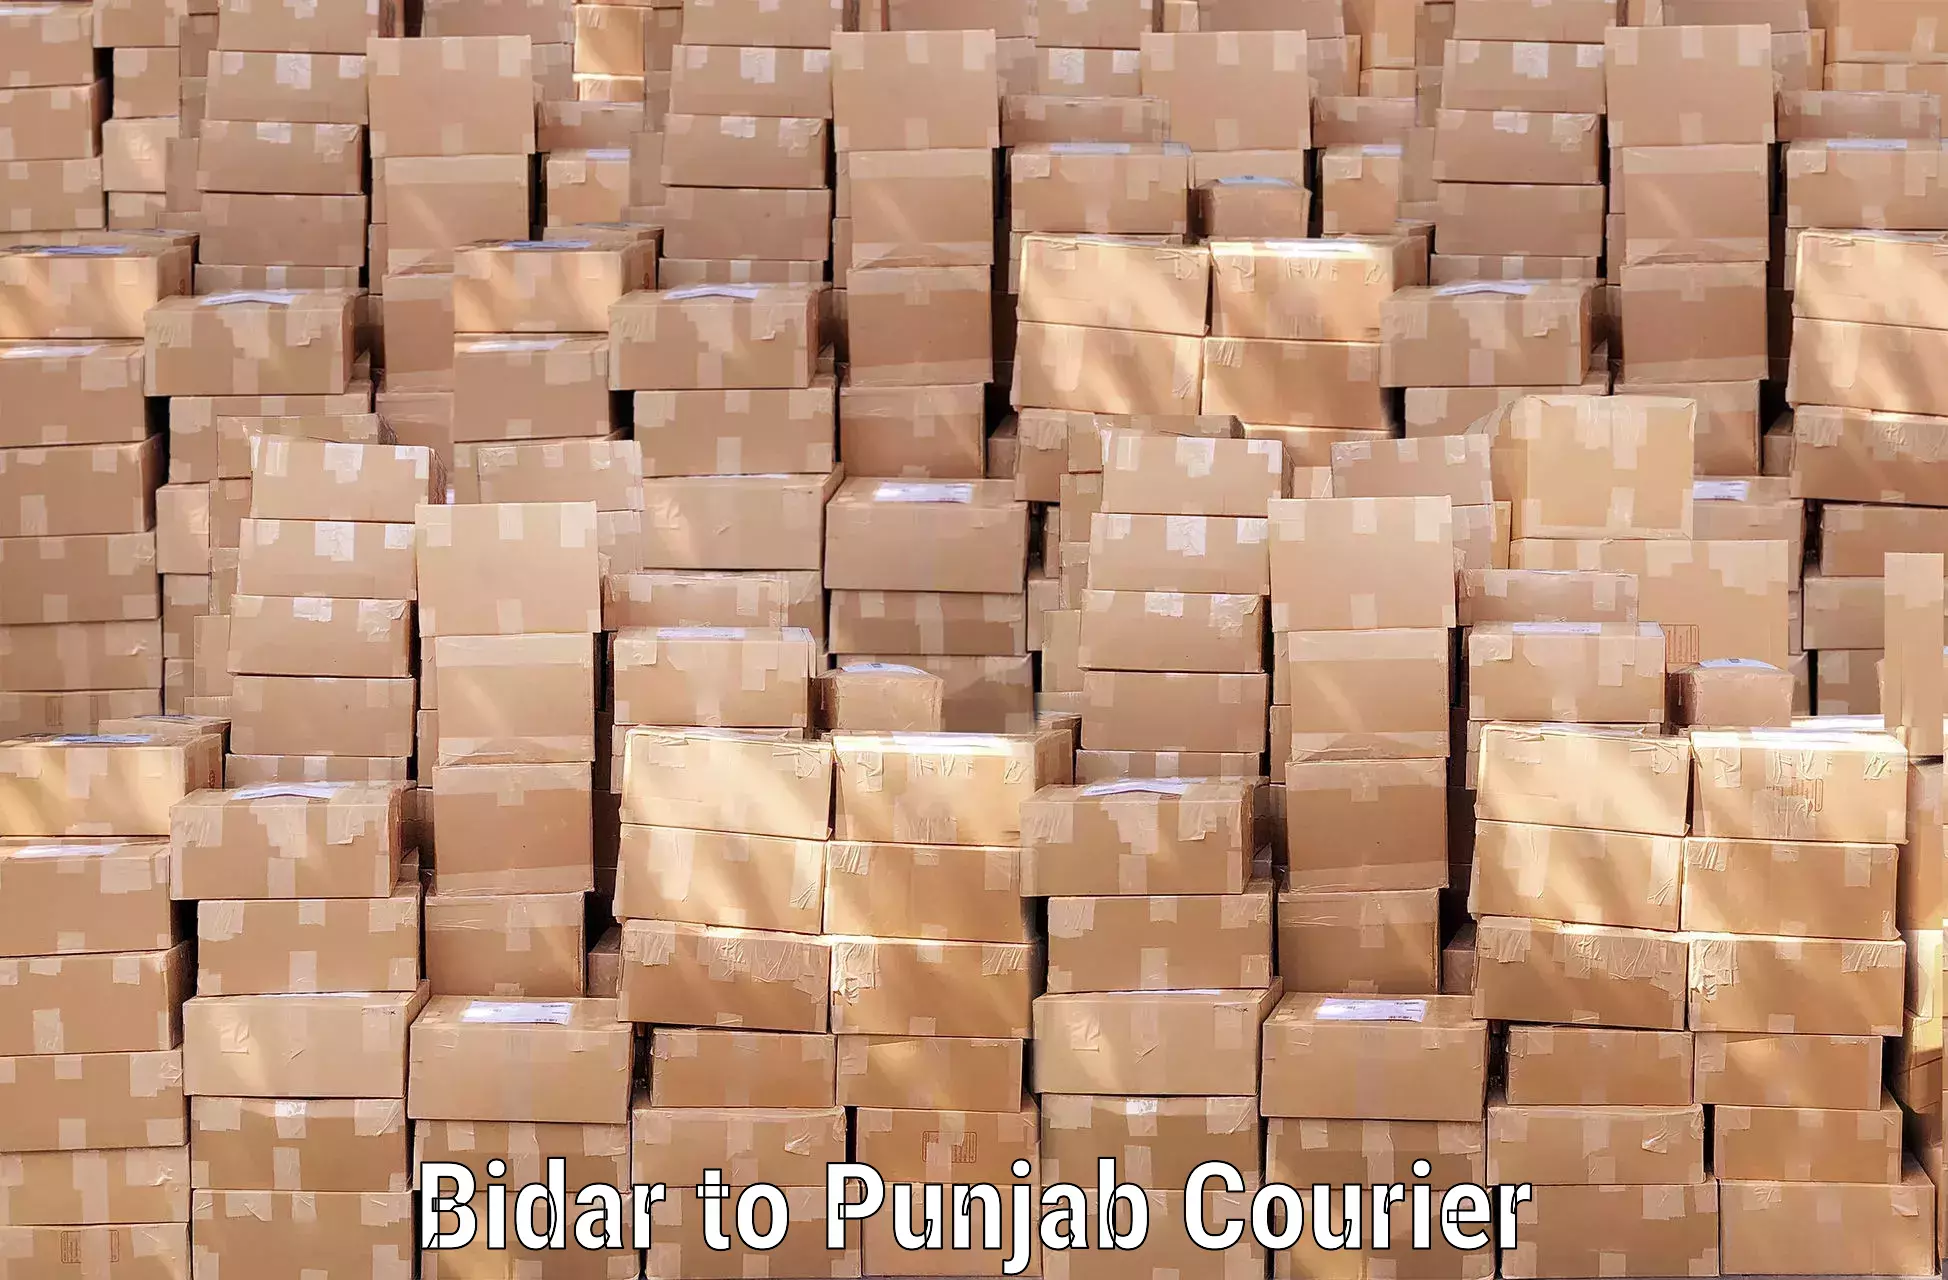 Baggage transport professionals Bidar to Punjab